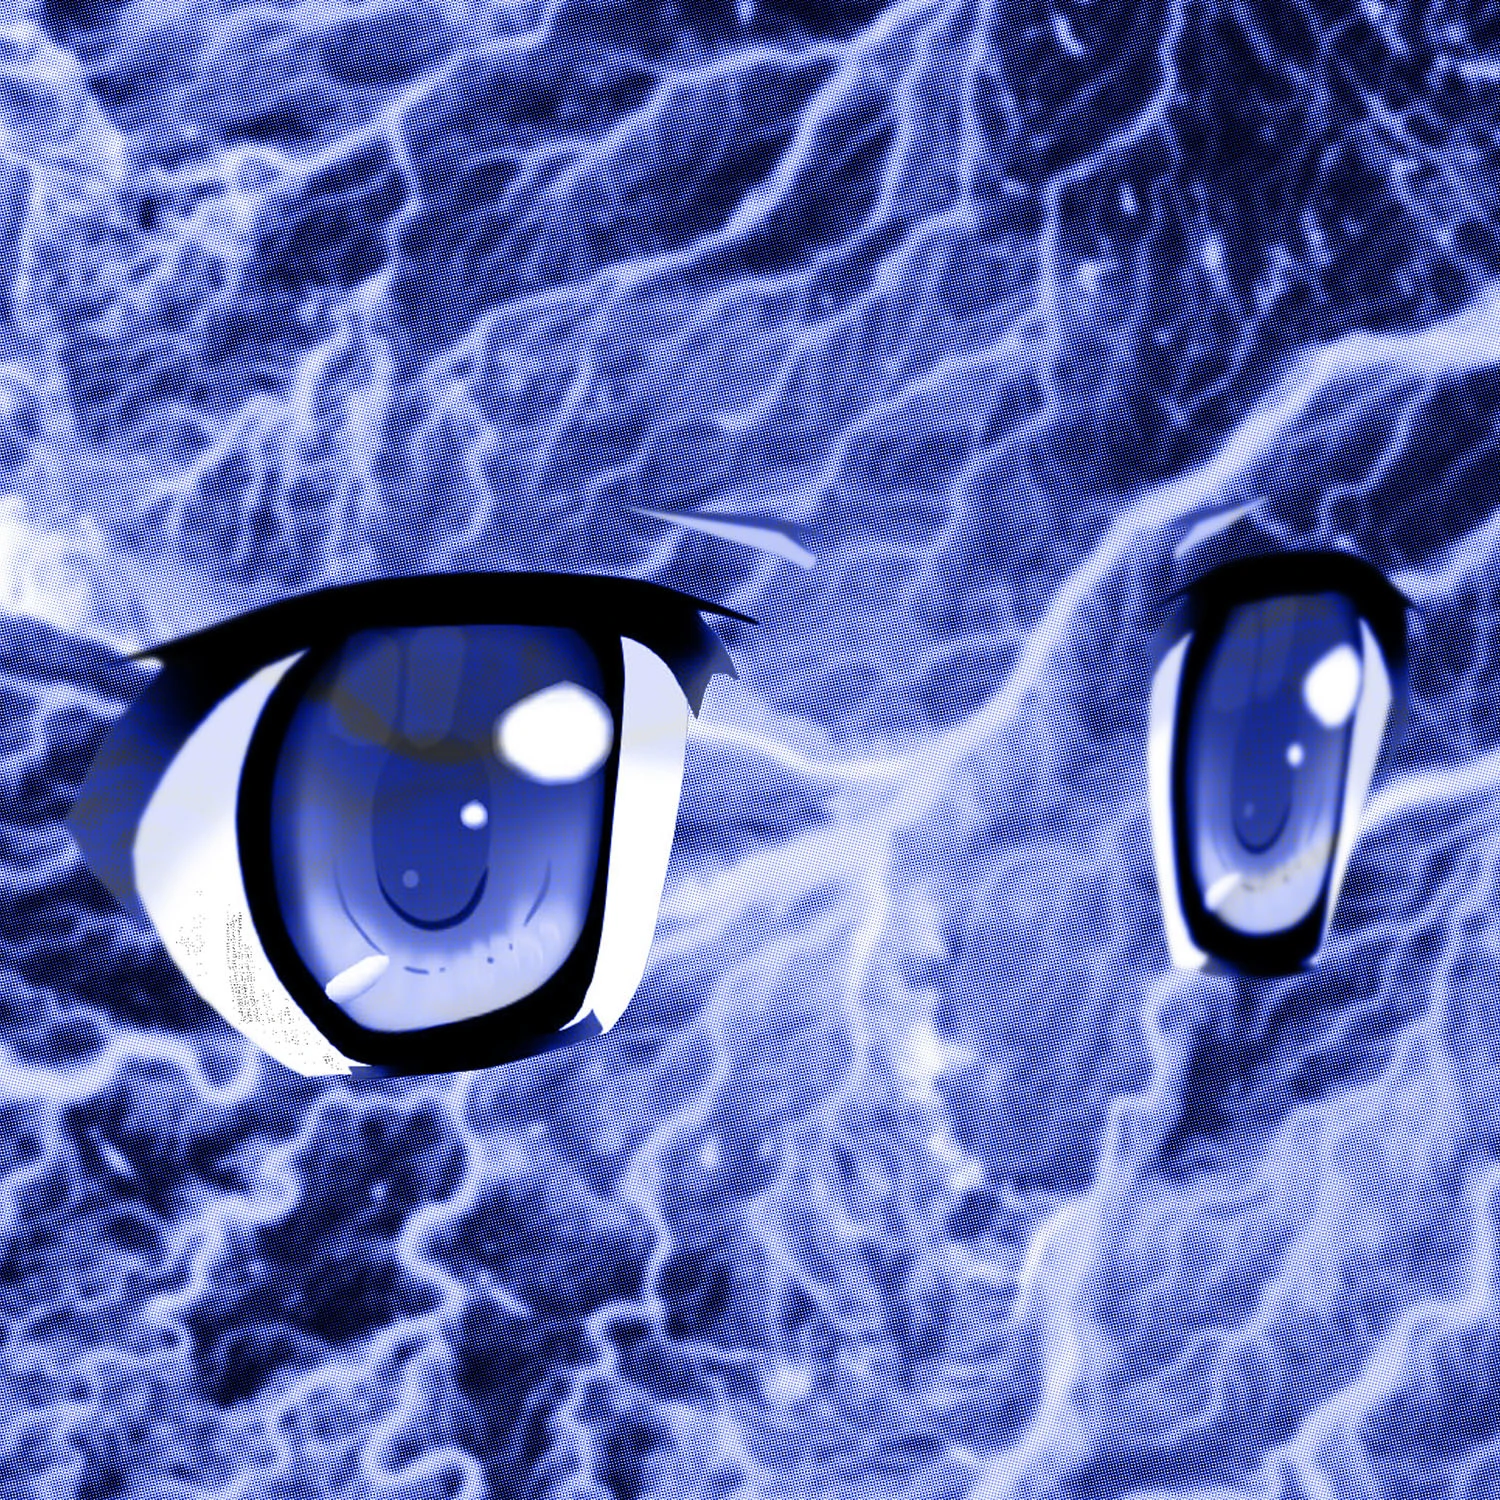 Itaqさんが手がけた新曲「Blue Eyes Patch」のアートワーク